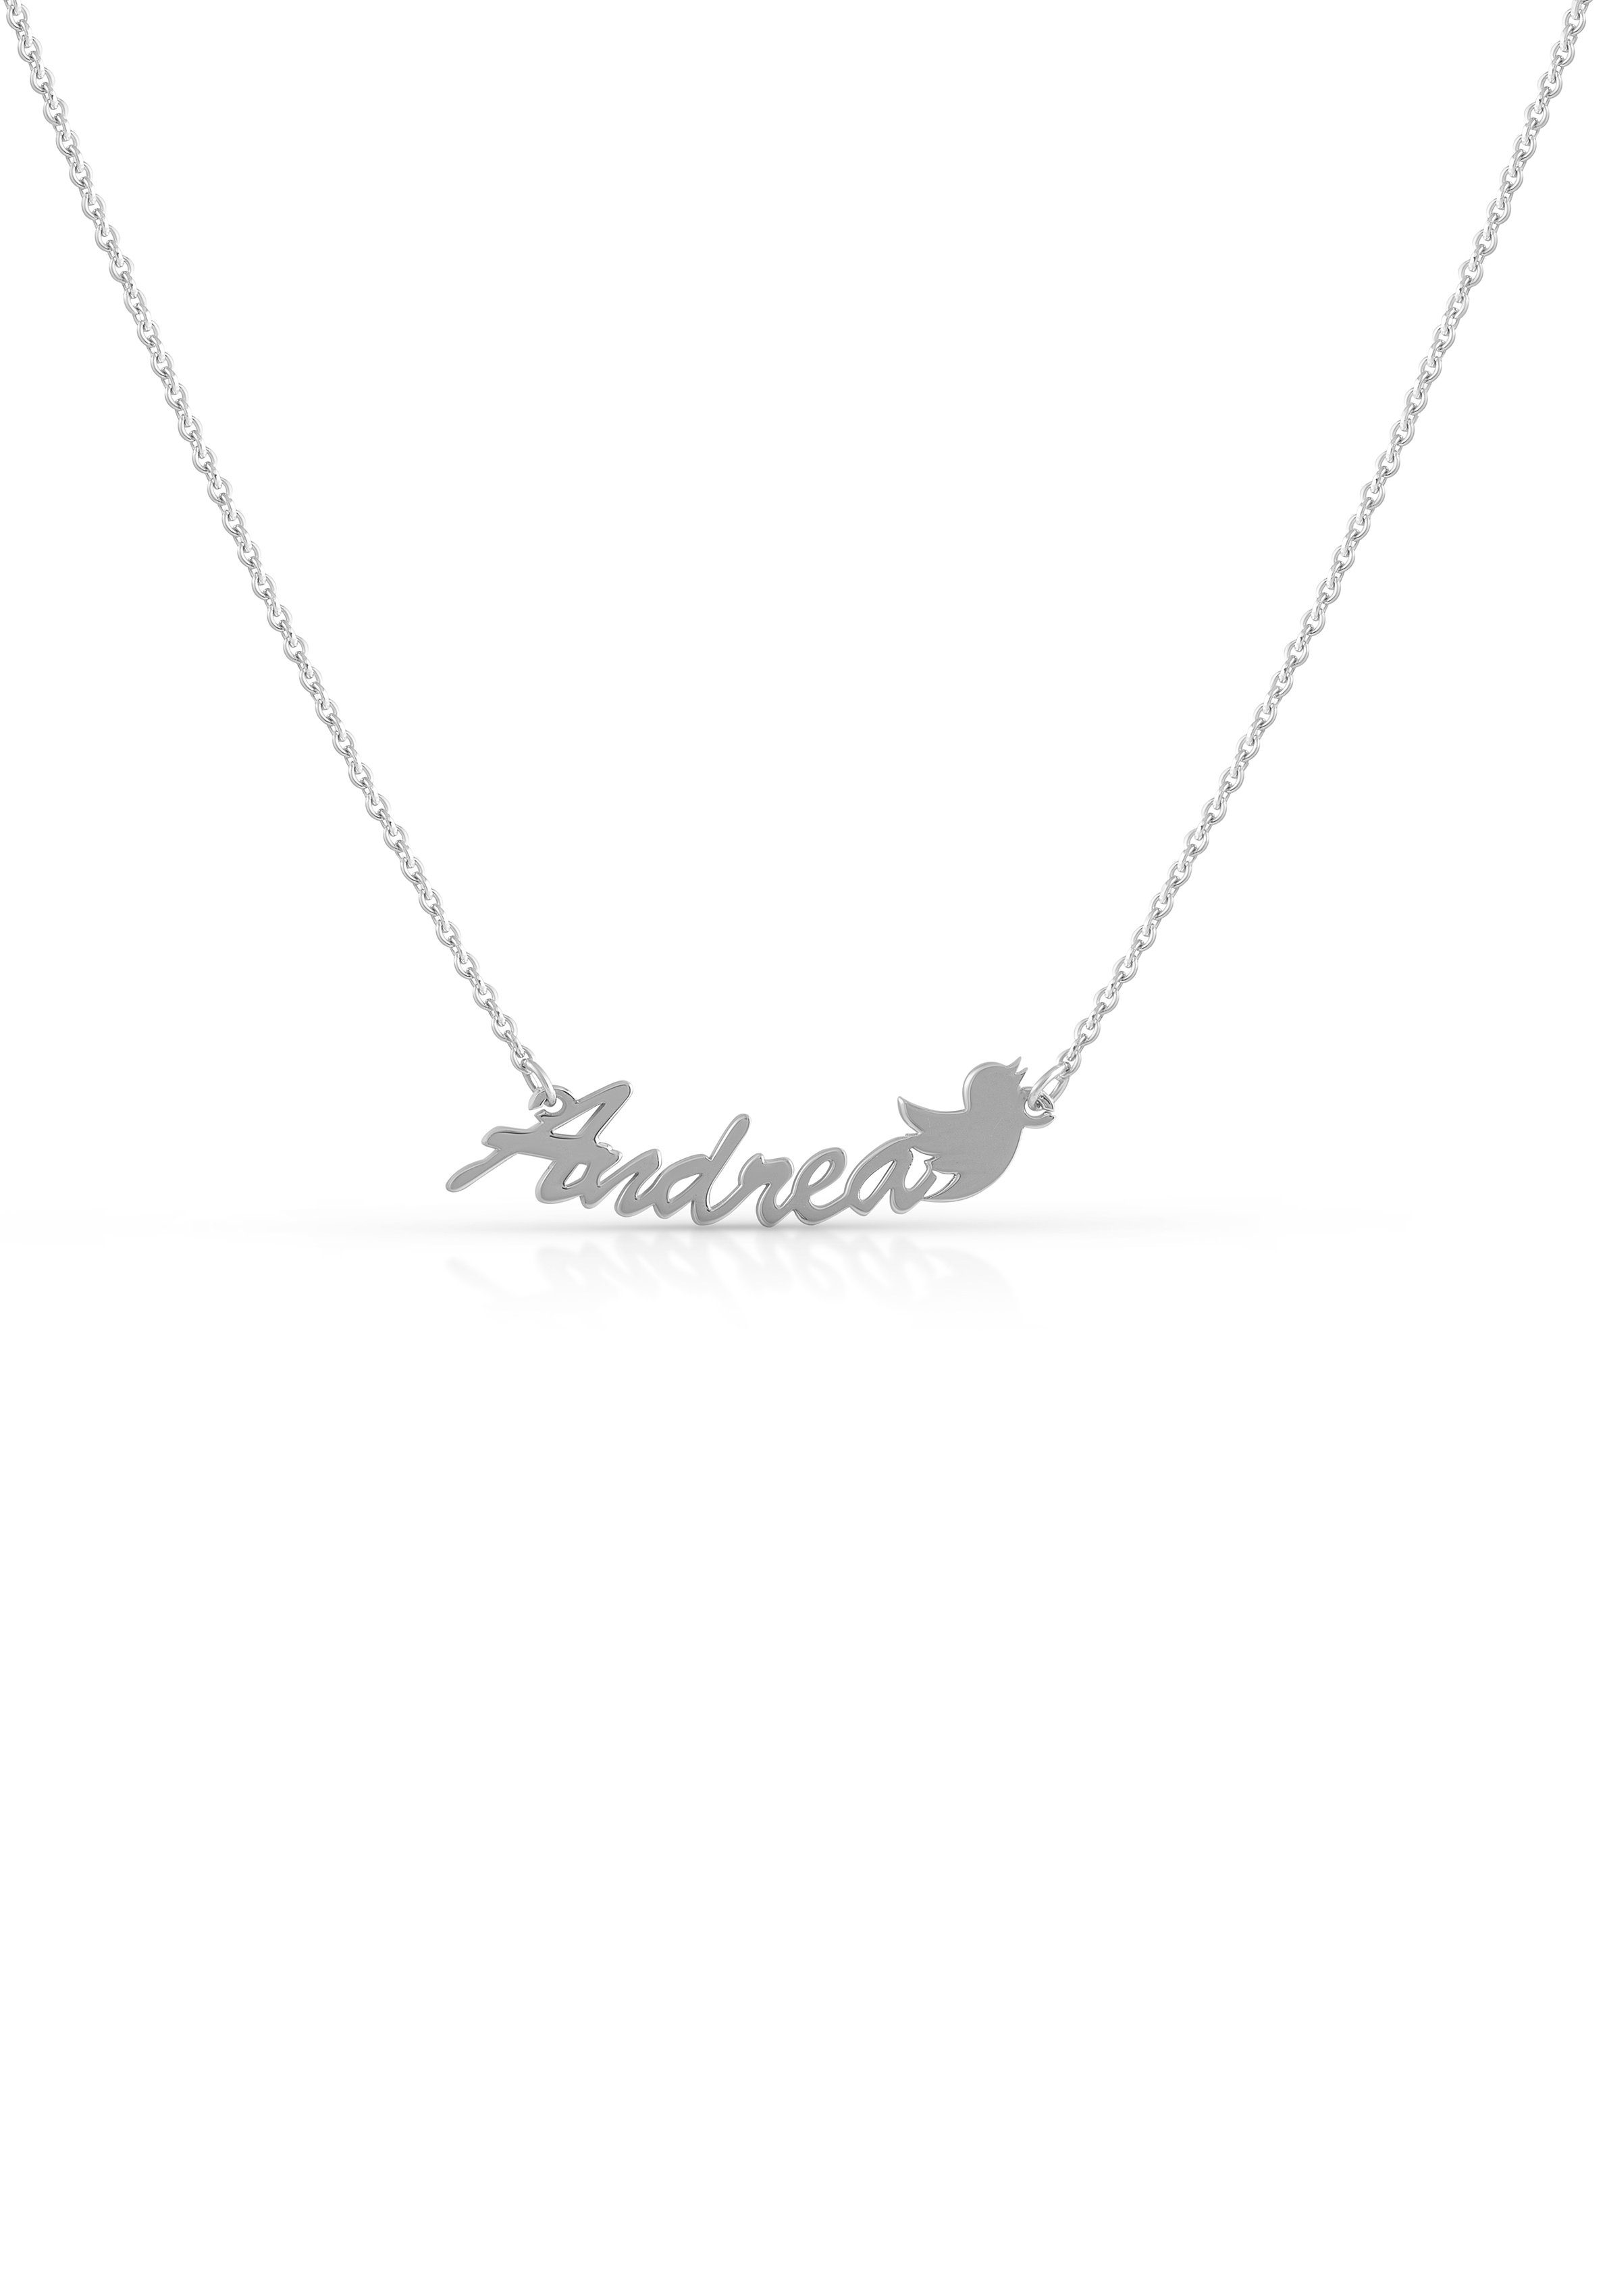 Firetti Namenskette Schmuck Geschenk Silber 925 Halskette mit deinem Namen, GRAVURwunsch per Mail, Anlass Geburtstag Valentinstag Weihnachten silberfarben